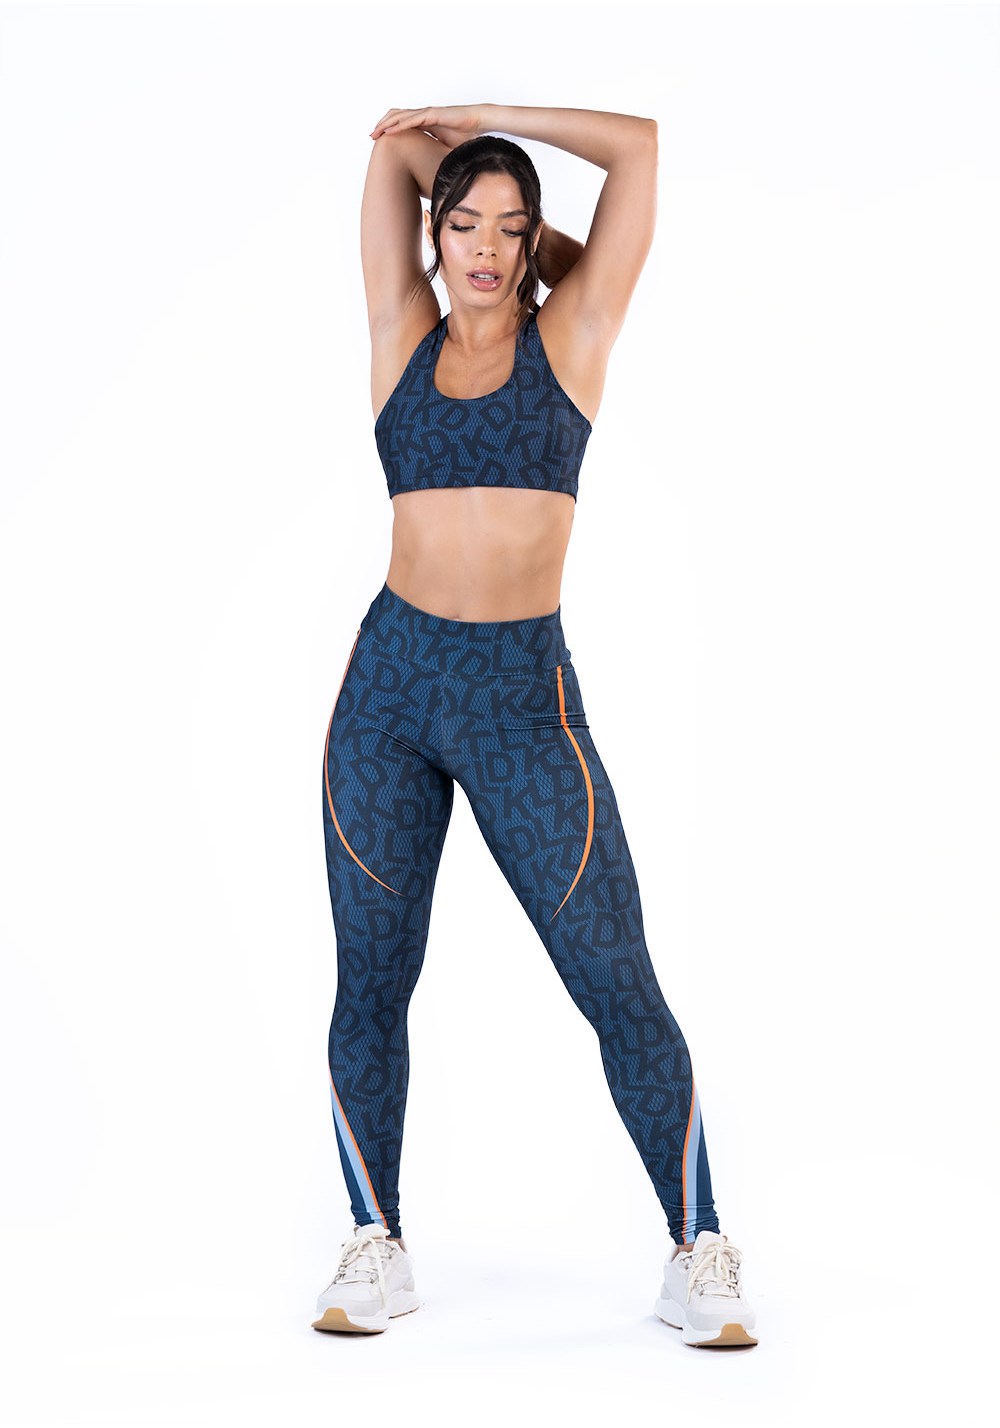 https://dlkmodas.fbitsstatic.net/img/p/legging-fitness-feminino-new-printed-estampada-dlk-soup-azul-82301/304198-1.jpg?w=1000&h=1428&v=no-value